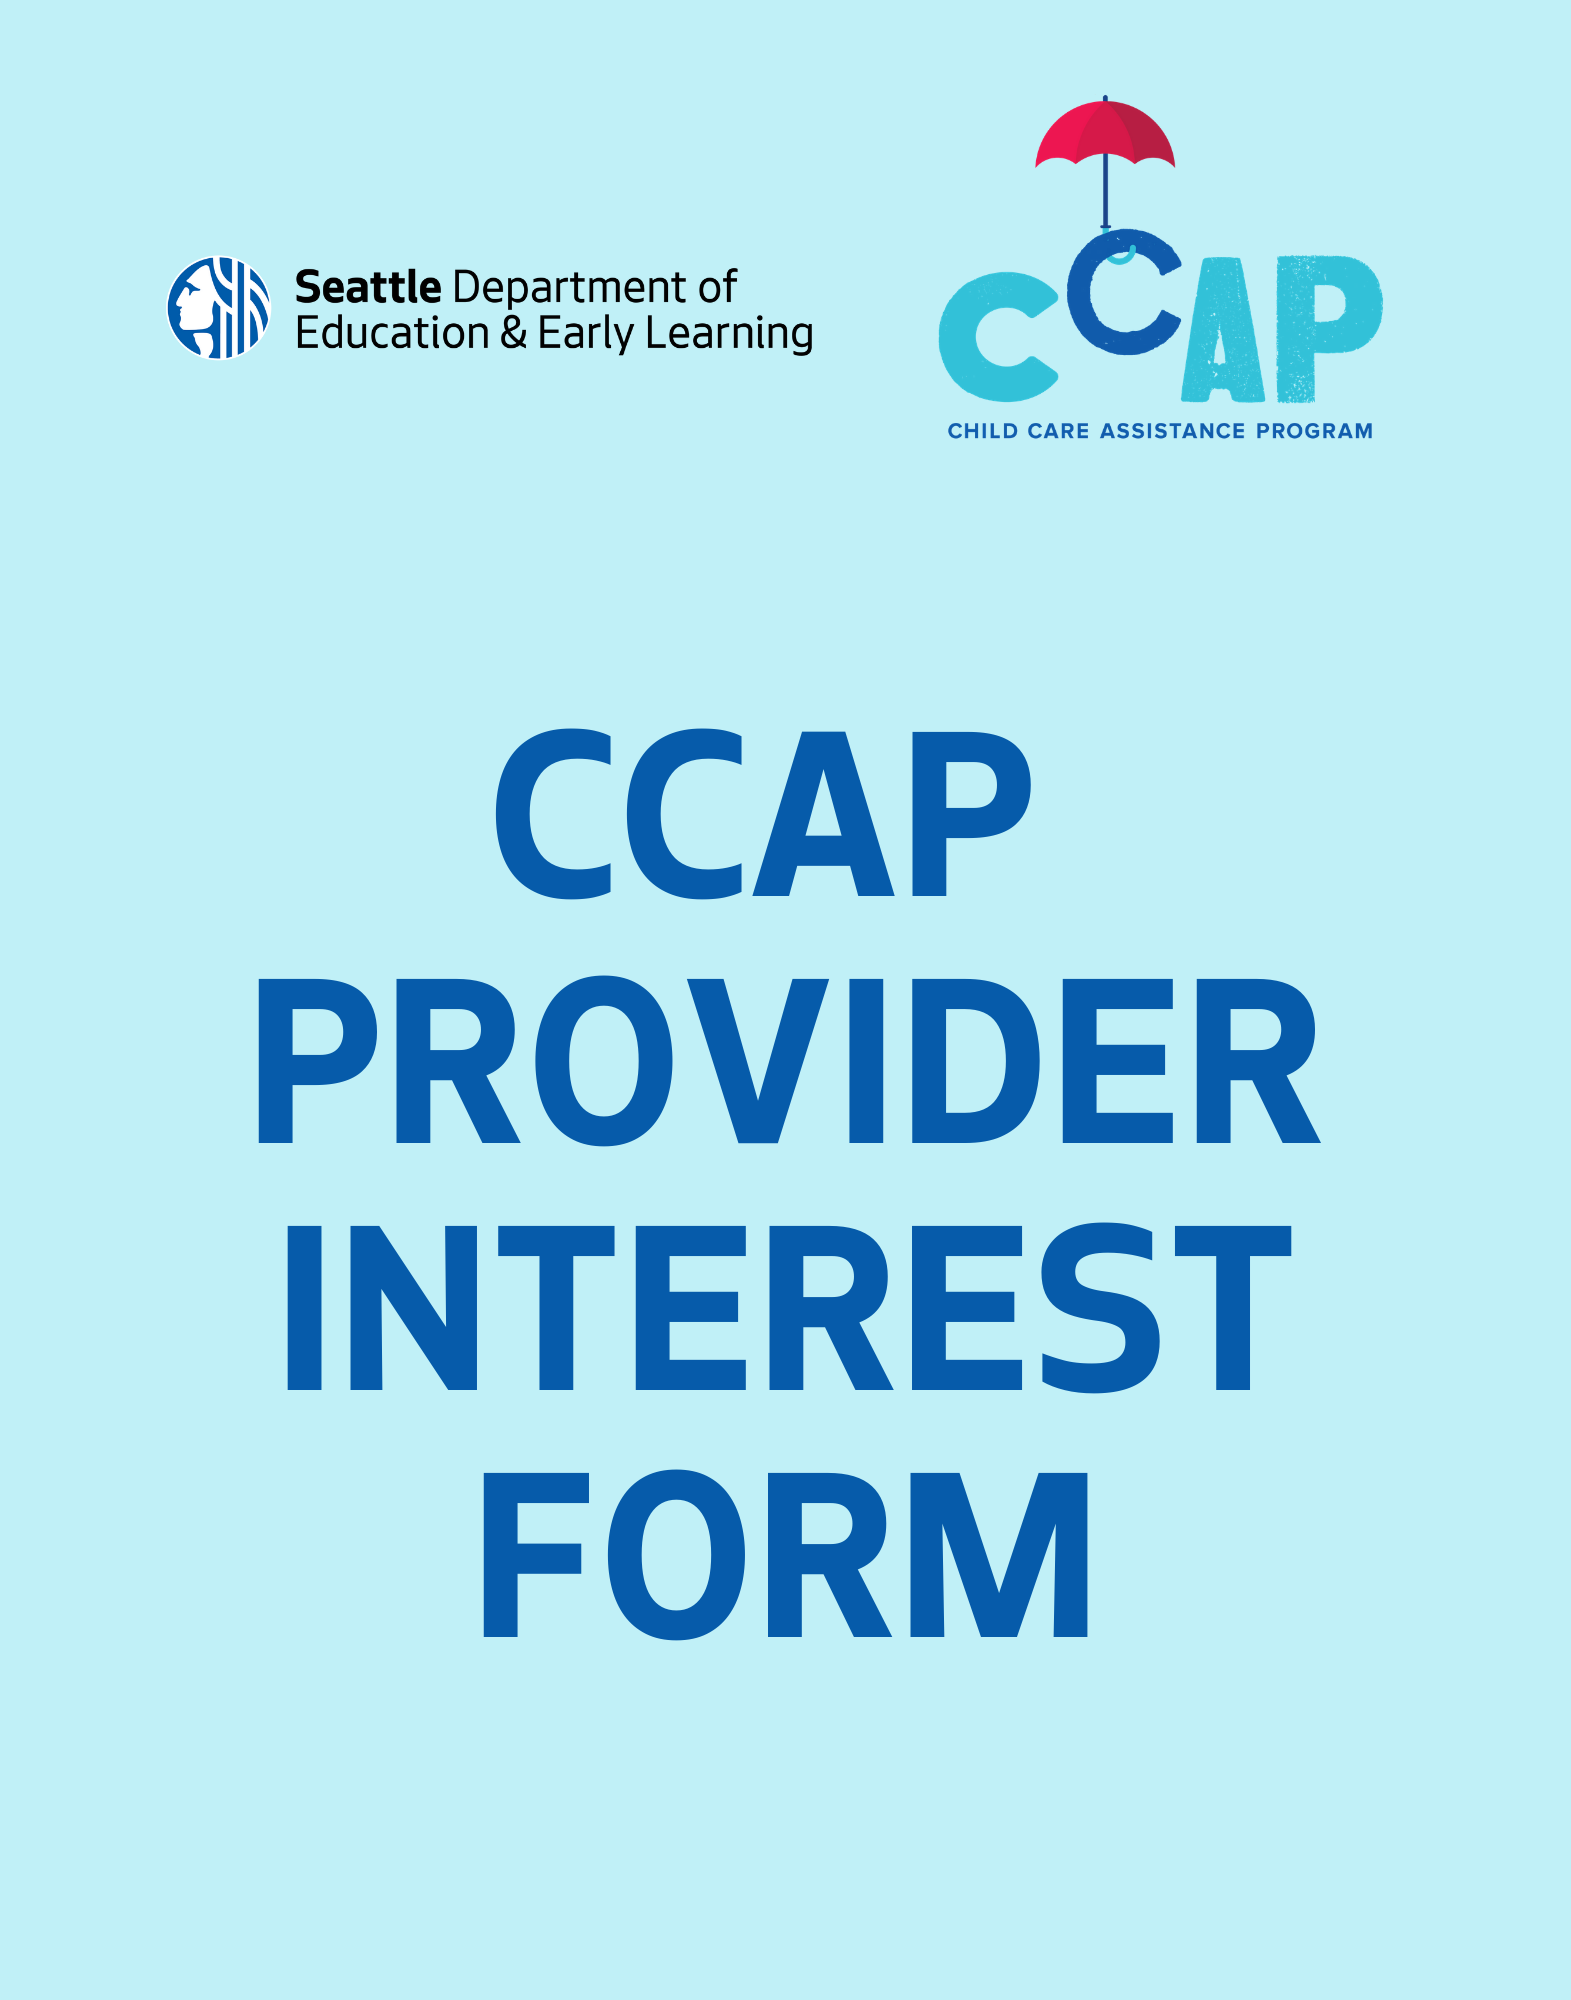 CCAP Provider Interest Form